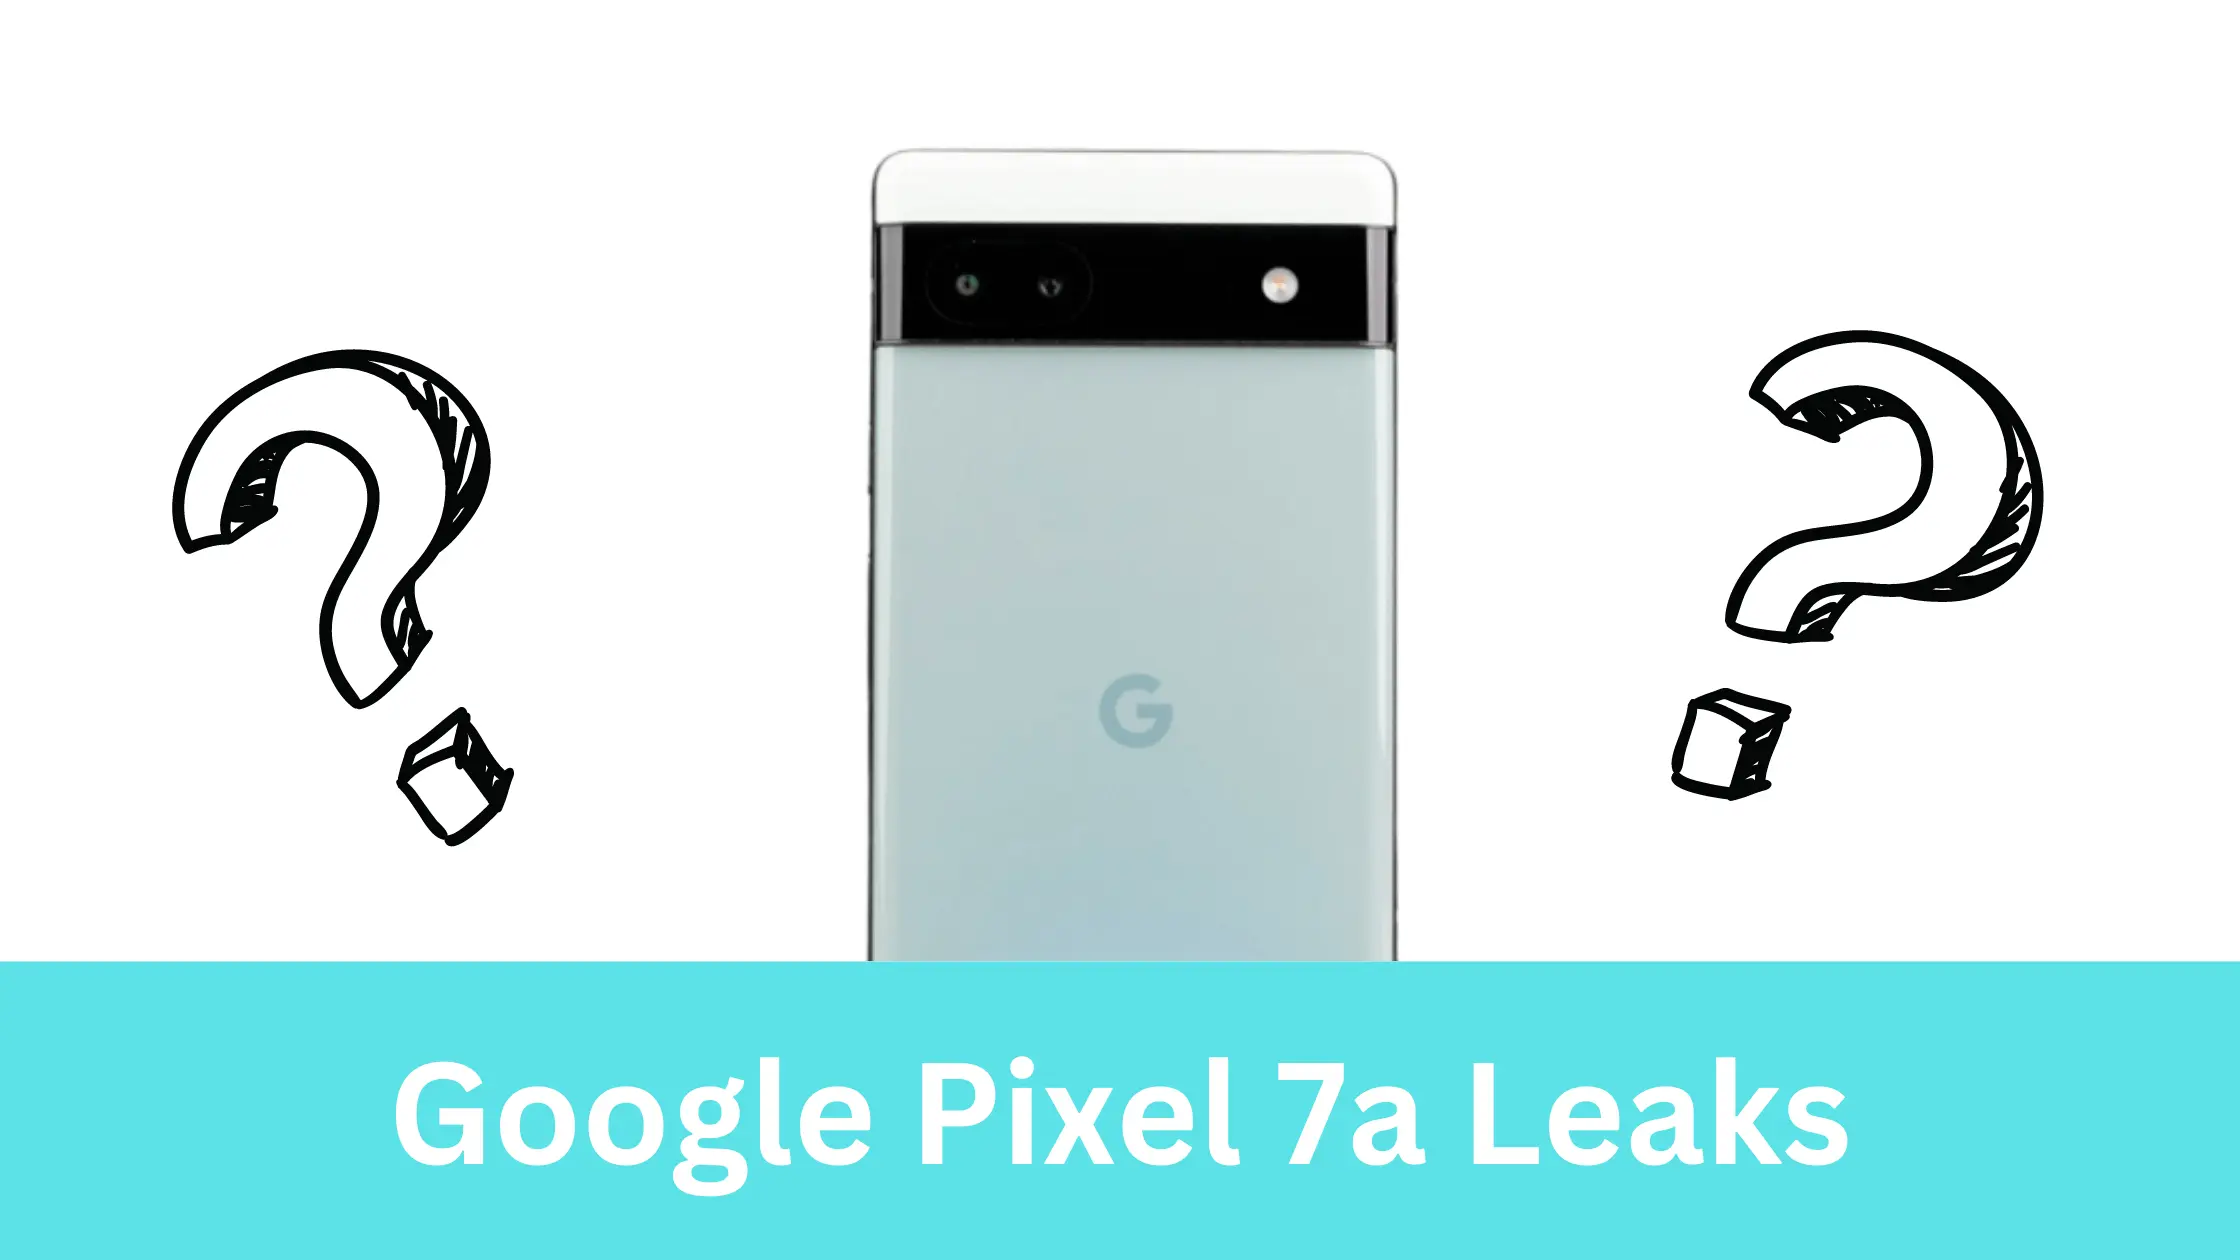 Google Pixel 7a Leaks